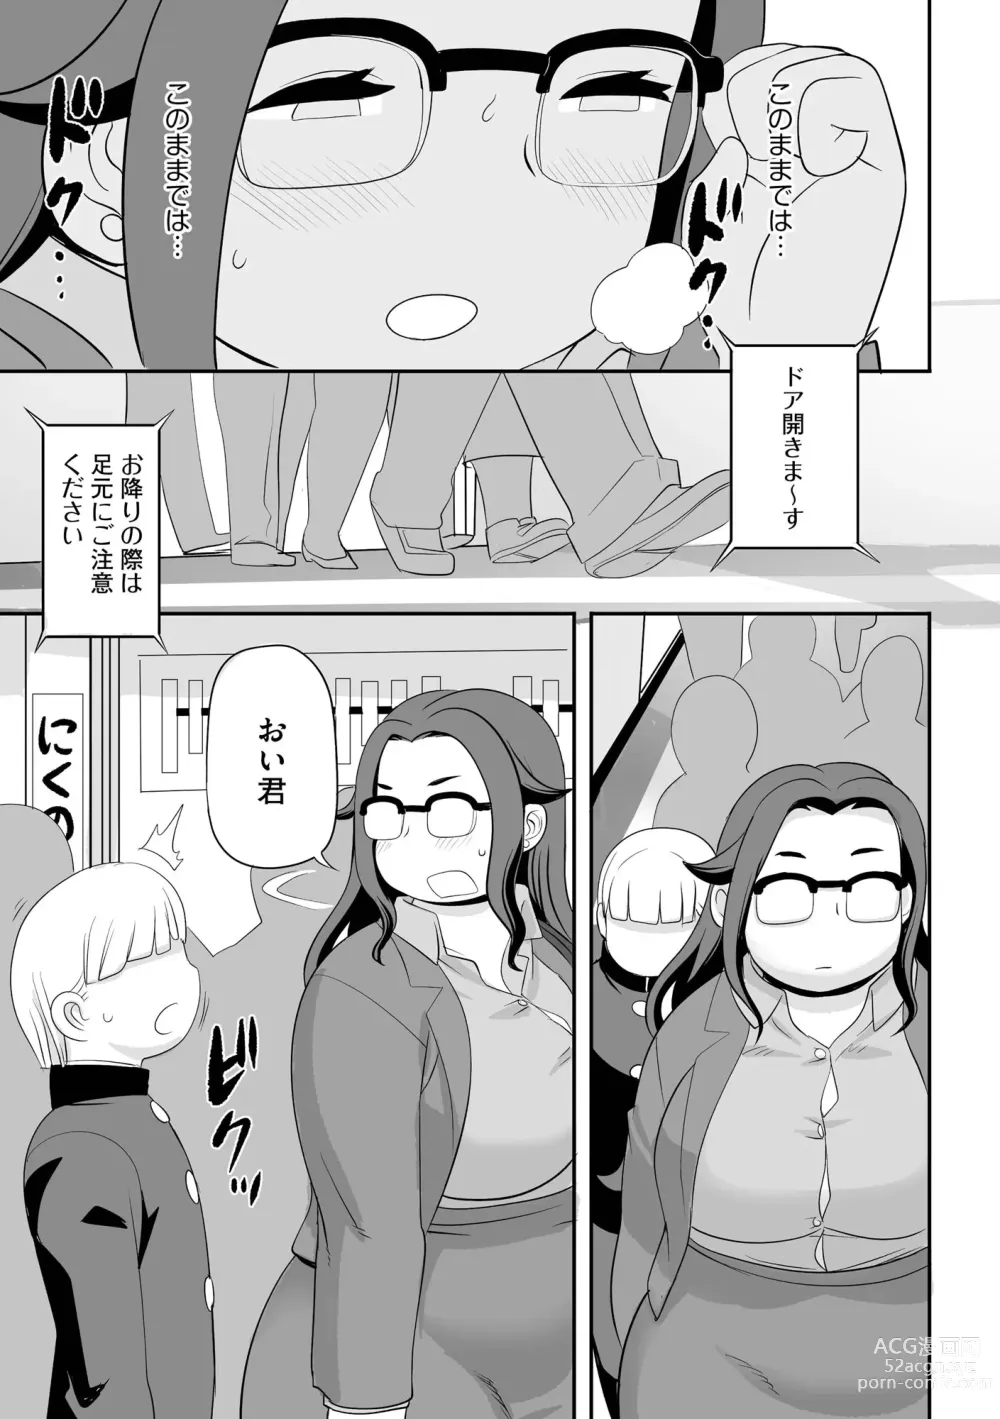 Page 139 of manga Chikan Etsuraku Ochi